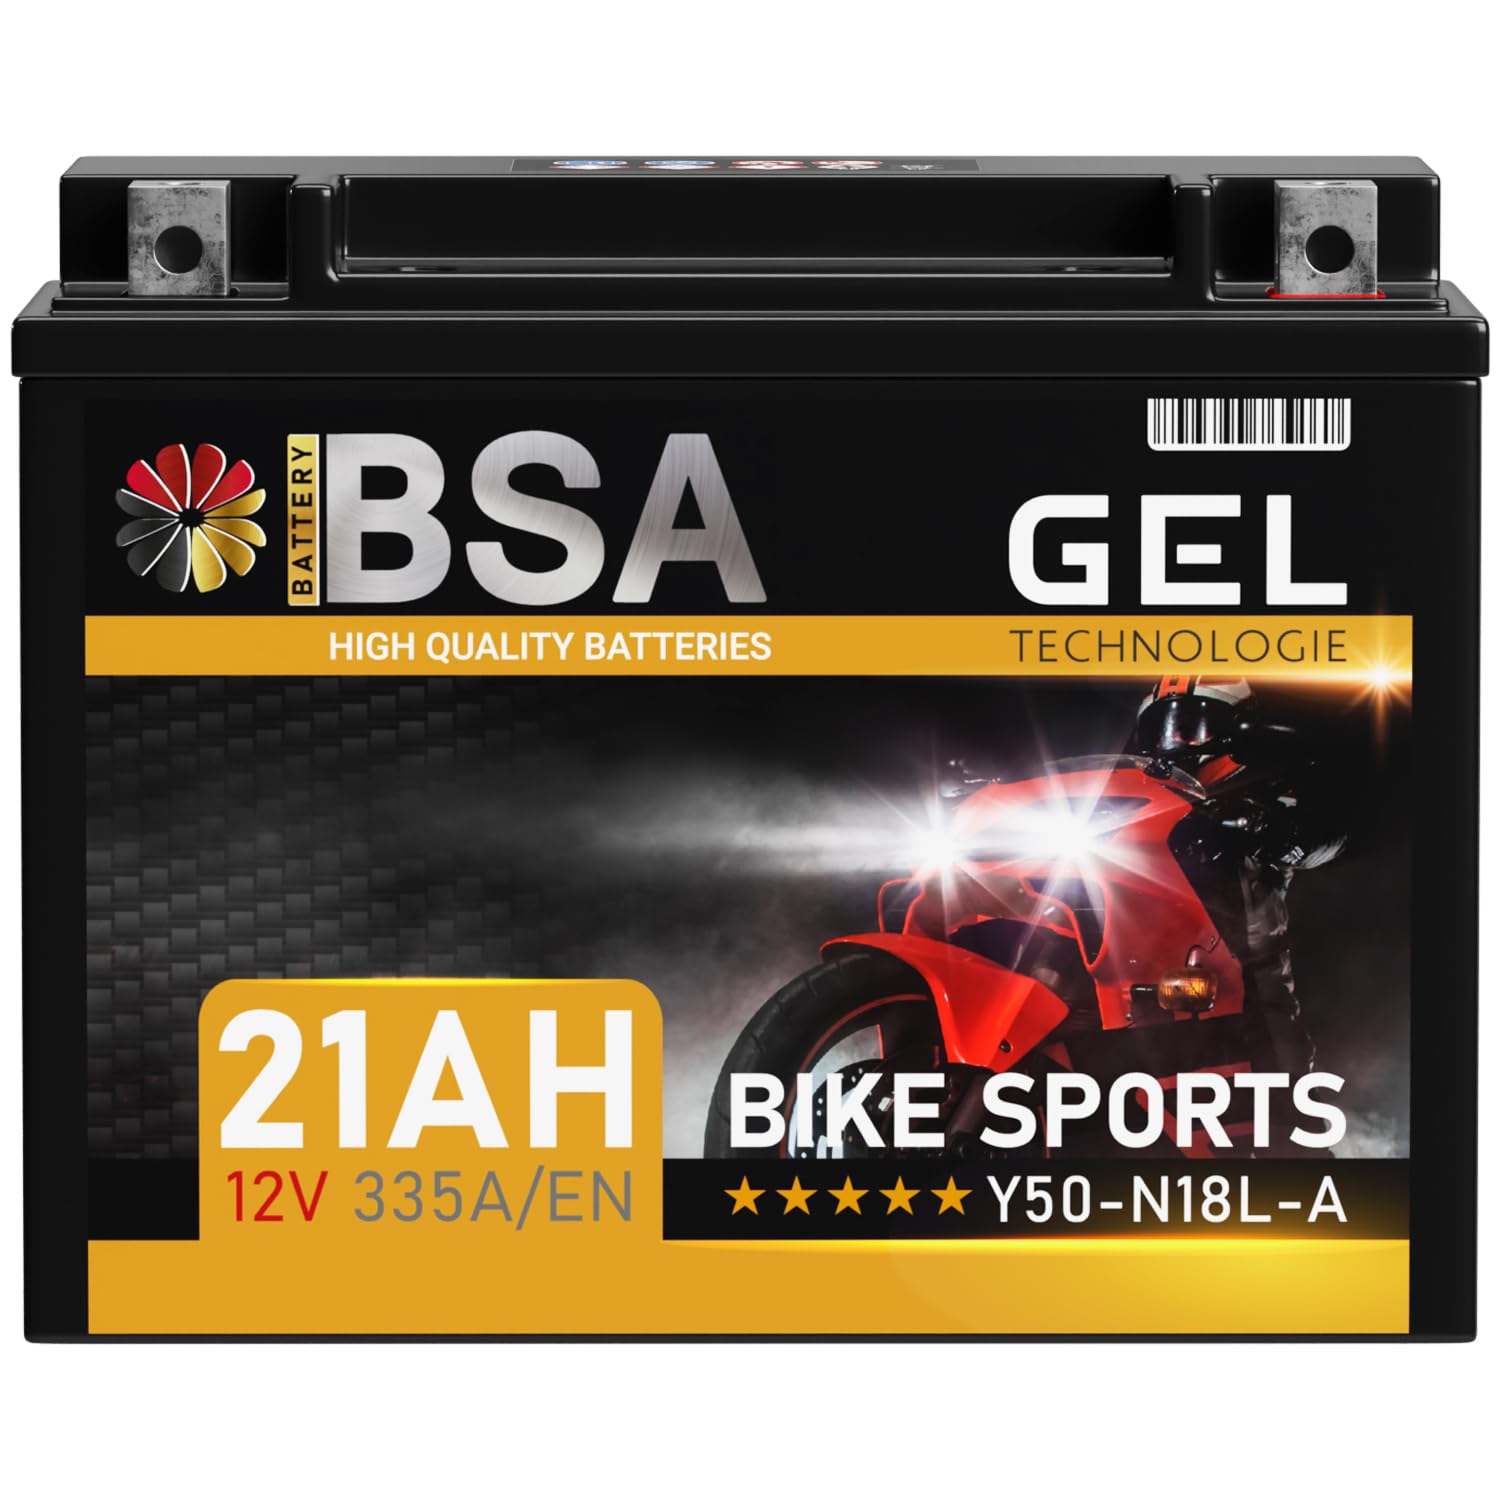 BSA Y50-N18L-A GEL Motorradbatterie 12V 21Ah 335A/EN Batterie doppelte Lebensdauer entspricht 52012 52016 C50-N18L-A Y50N18L-A2 vorgeladen auslaufsicher wartungsfrei von BSA BATTERY HIGH QUALITY BATTERIES